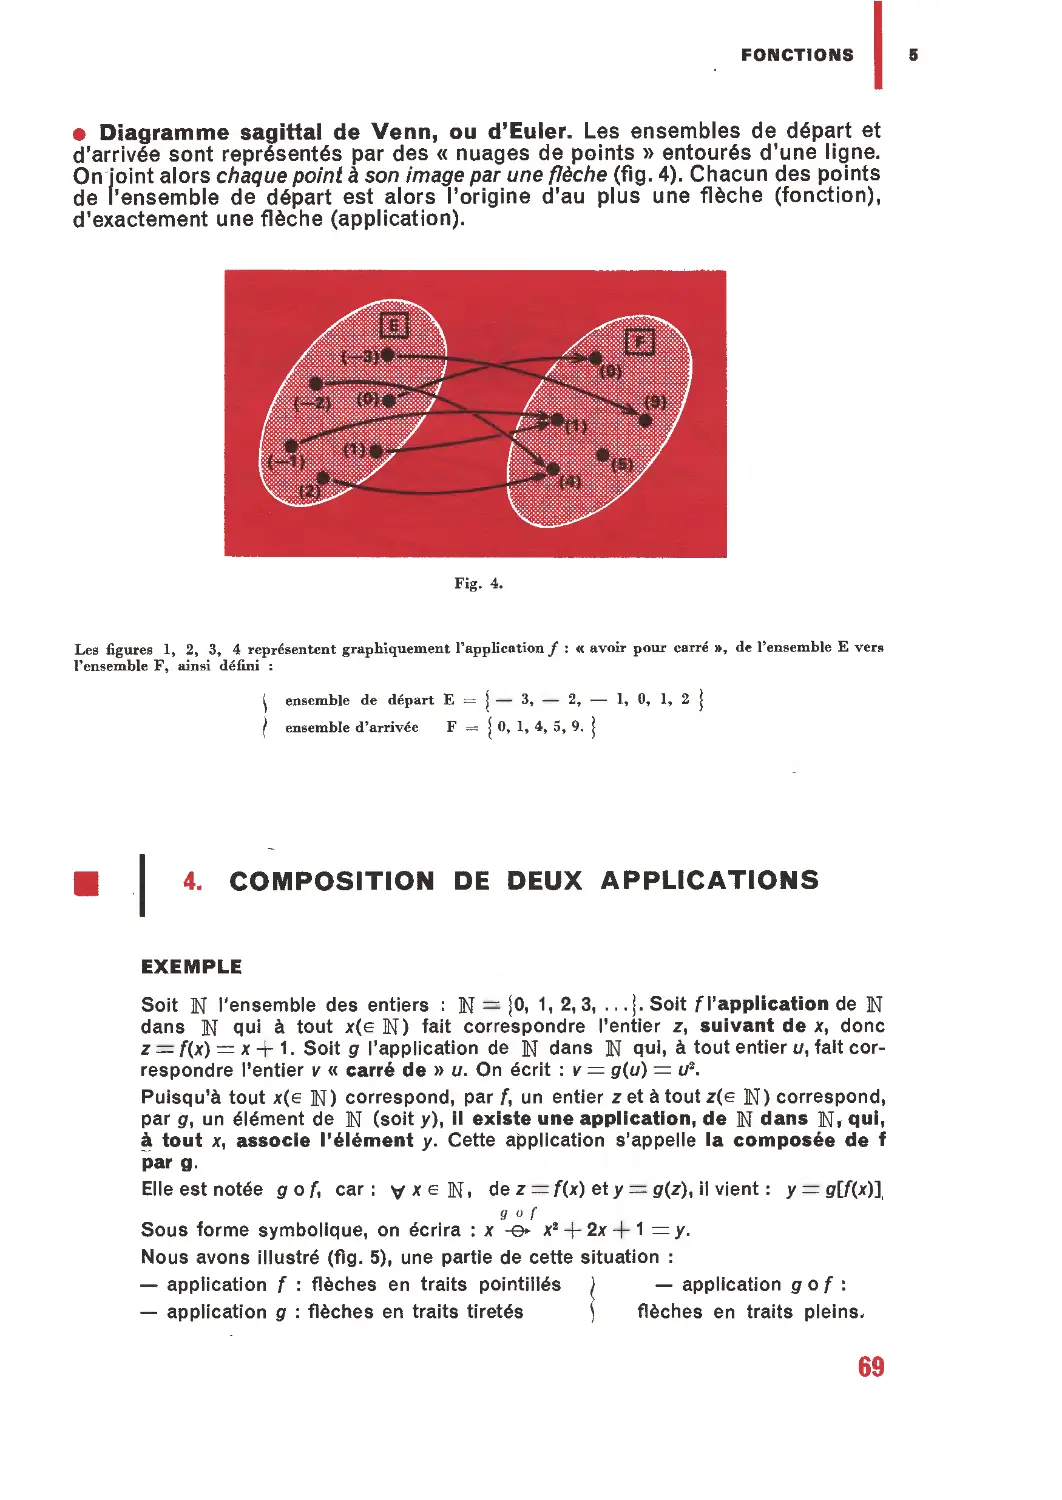 4. Composition de deux applications